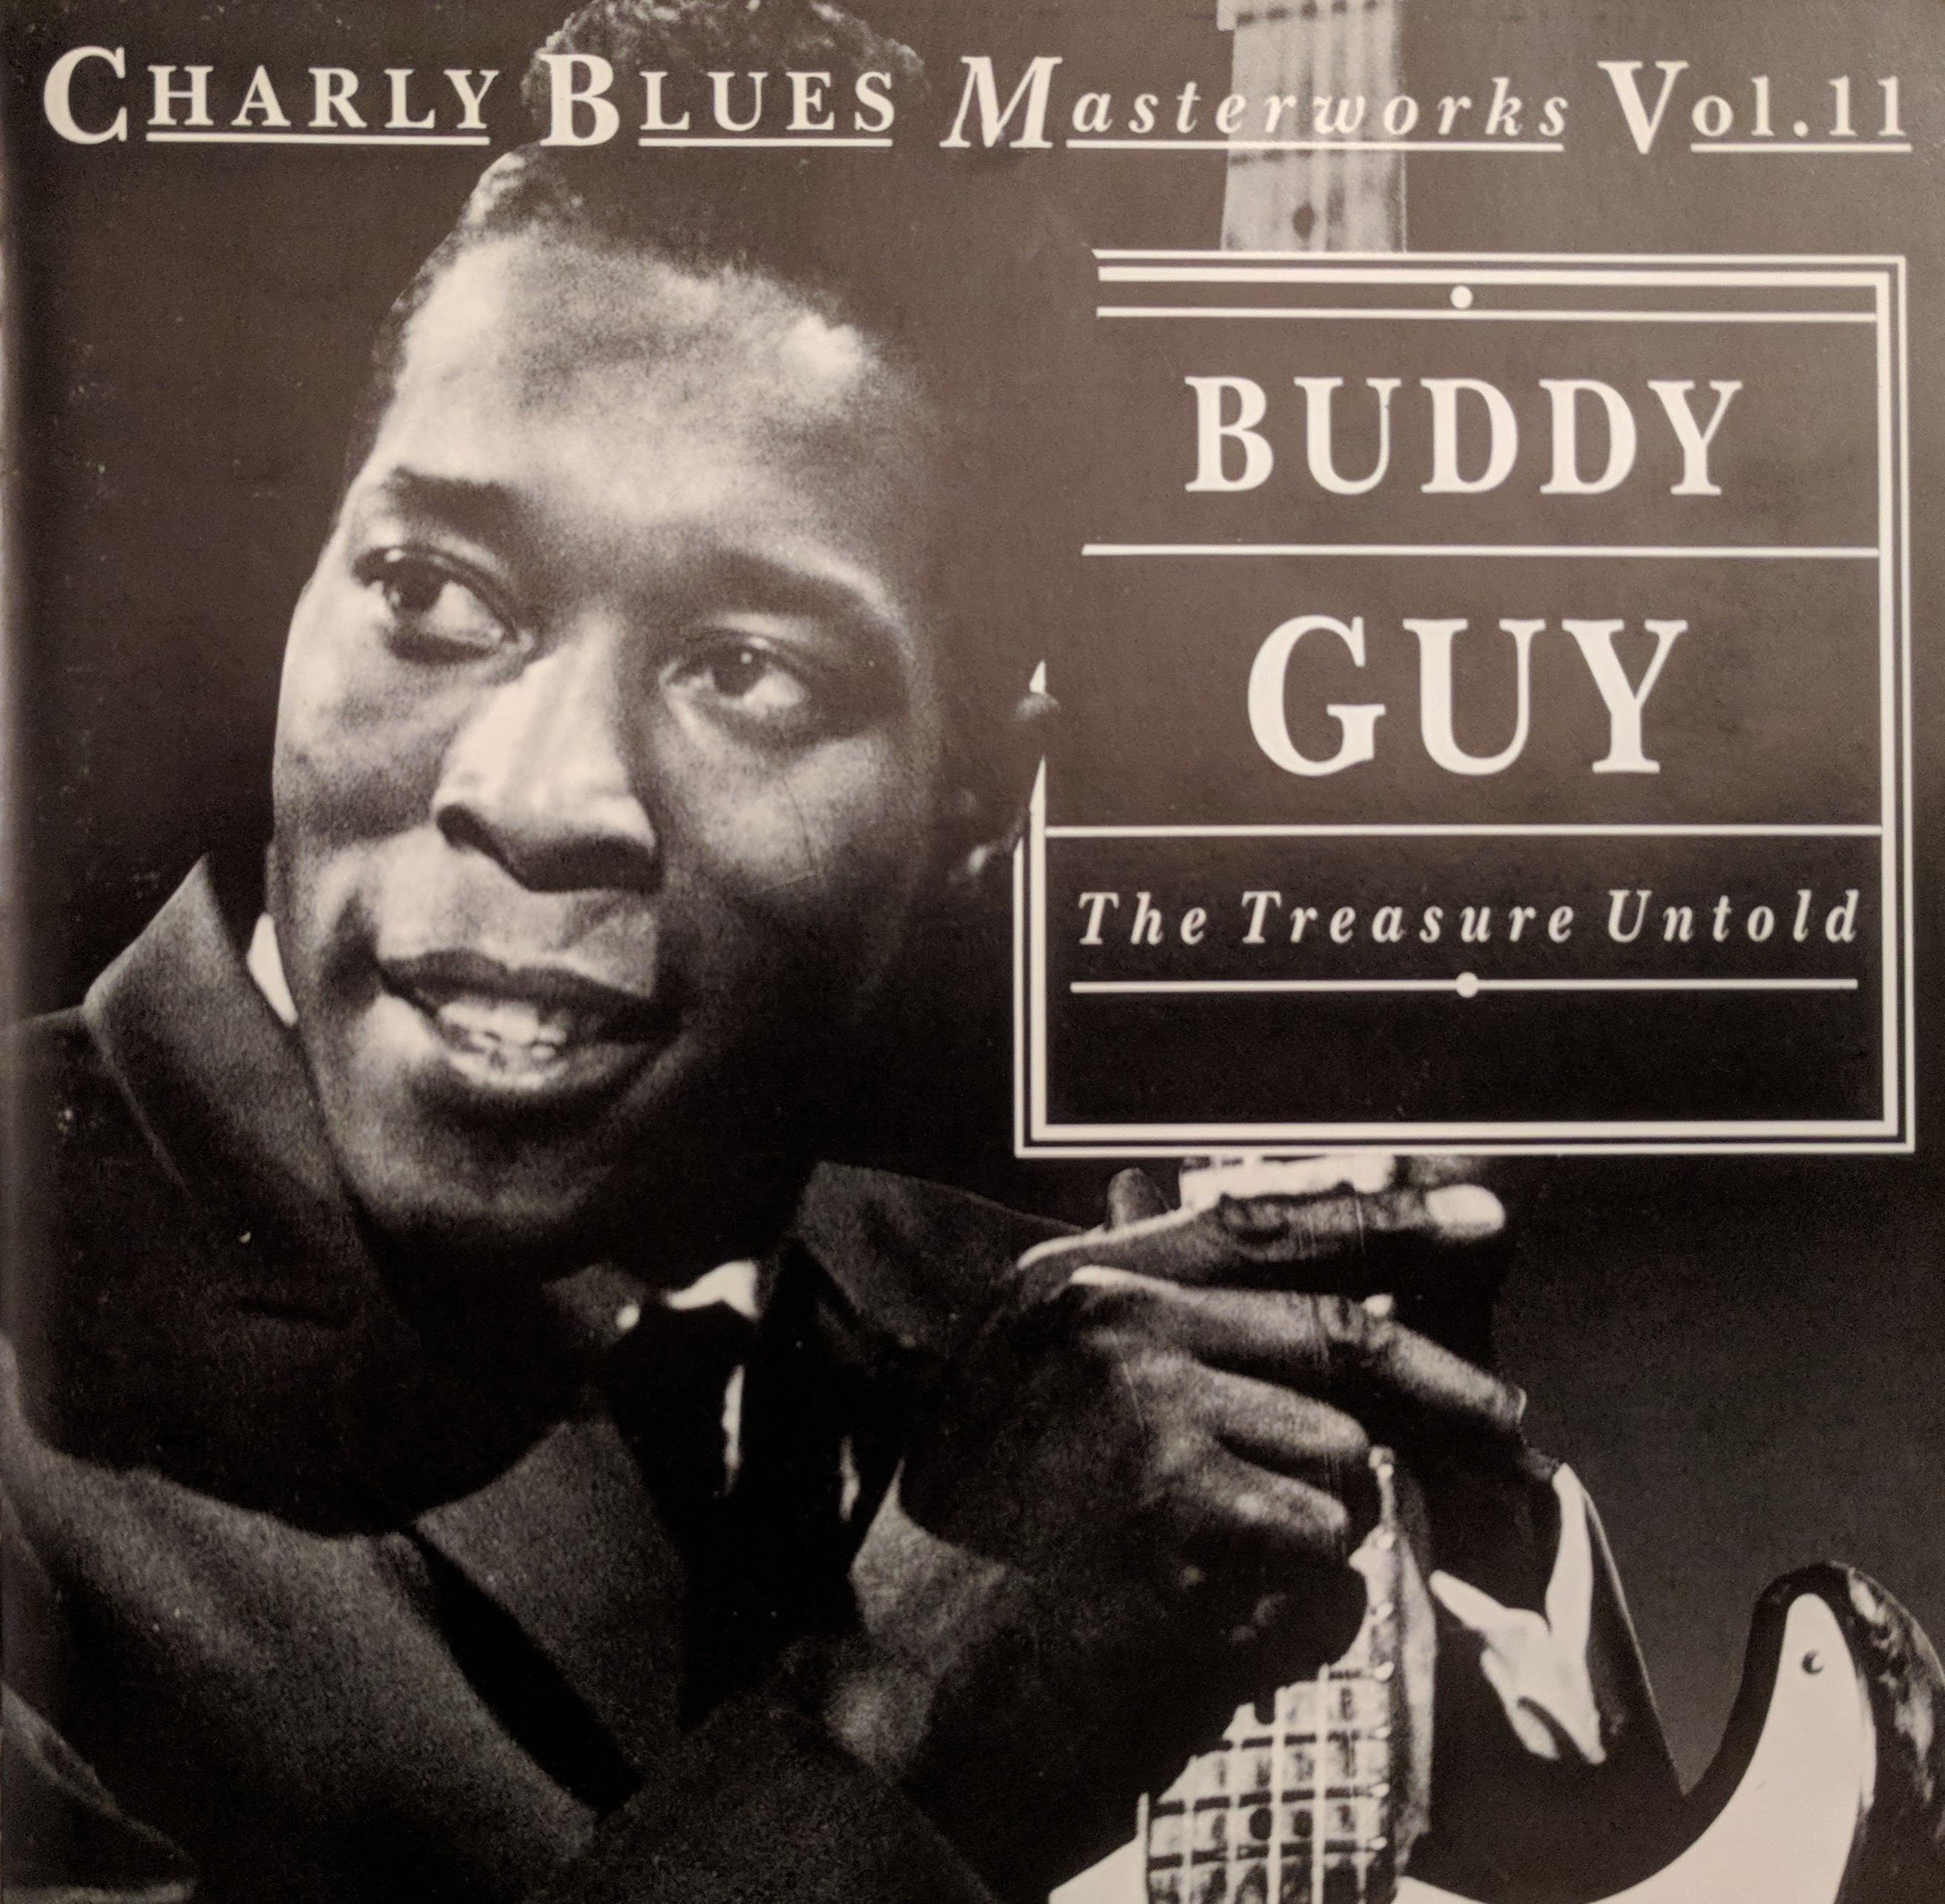 BUDDY GUY - The Treasure Untold cover 